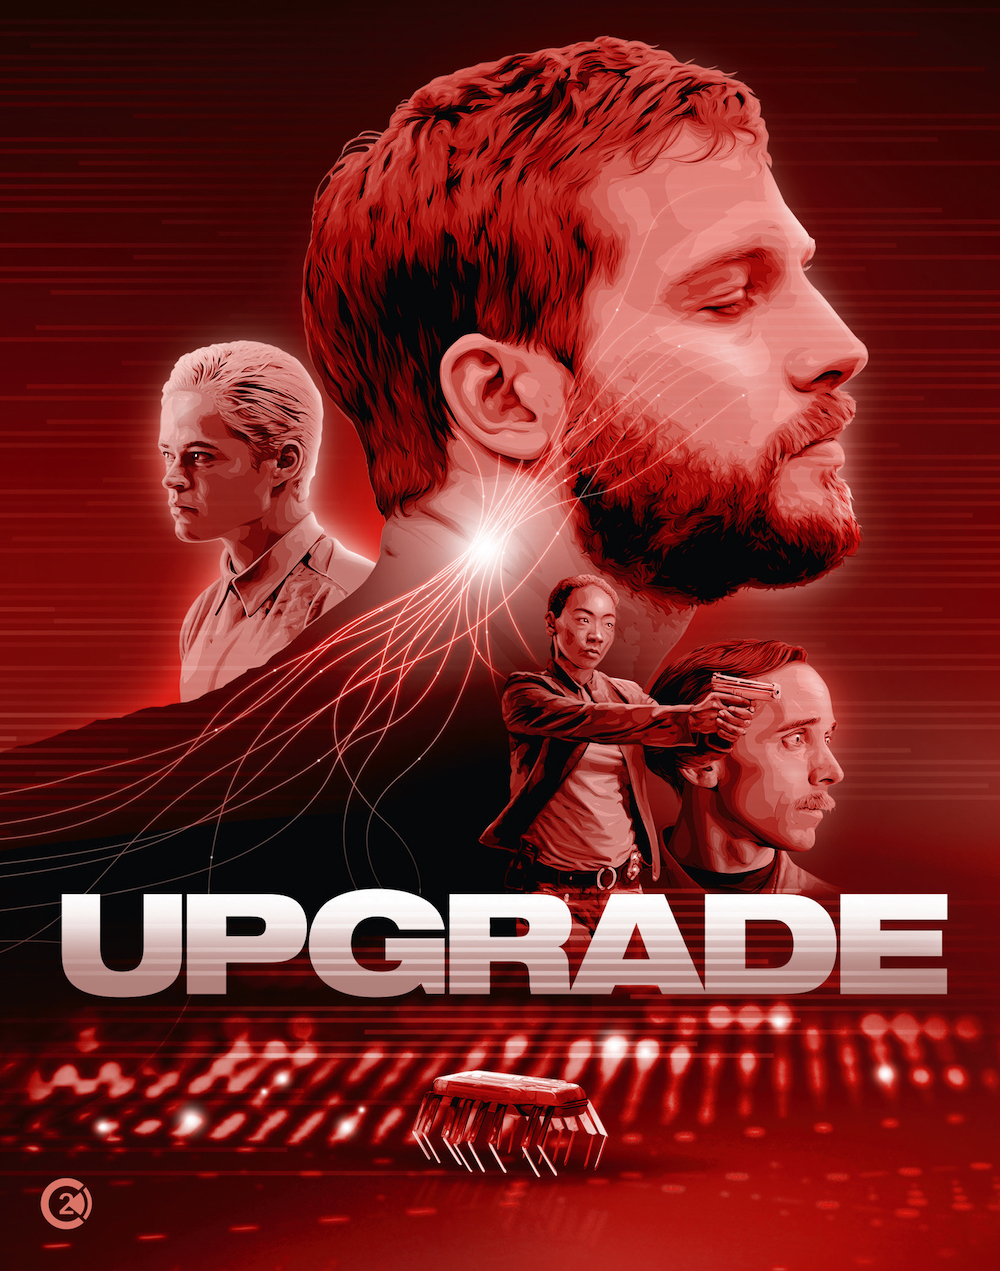 UPGRADE | Série ainda está em desenvolvimento de acordo com o CEO Jason Blum da Blumhouse